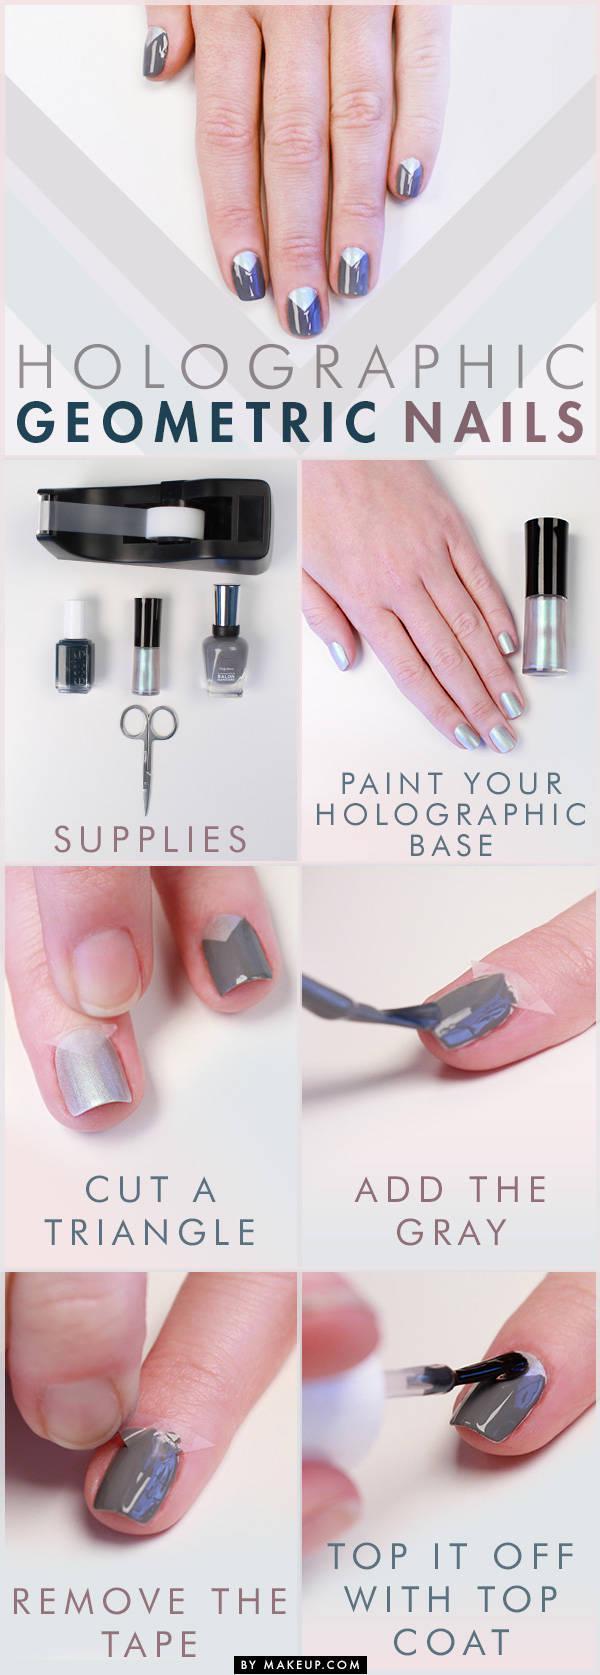 รูปภาพ:http://www.makeup.com/wp-content/uploads/2013/11/holographic_and_gray_nails_tutorial.jpg